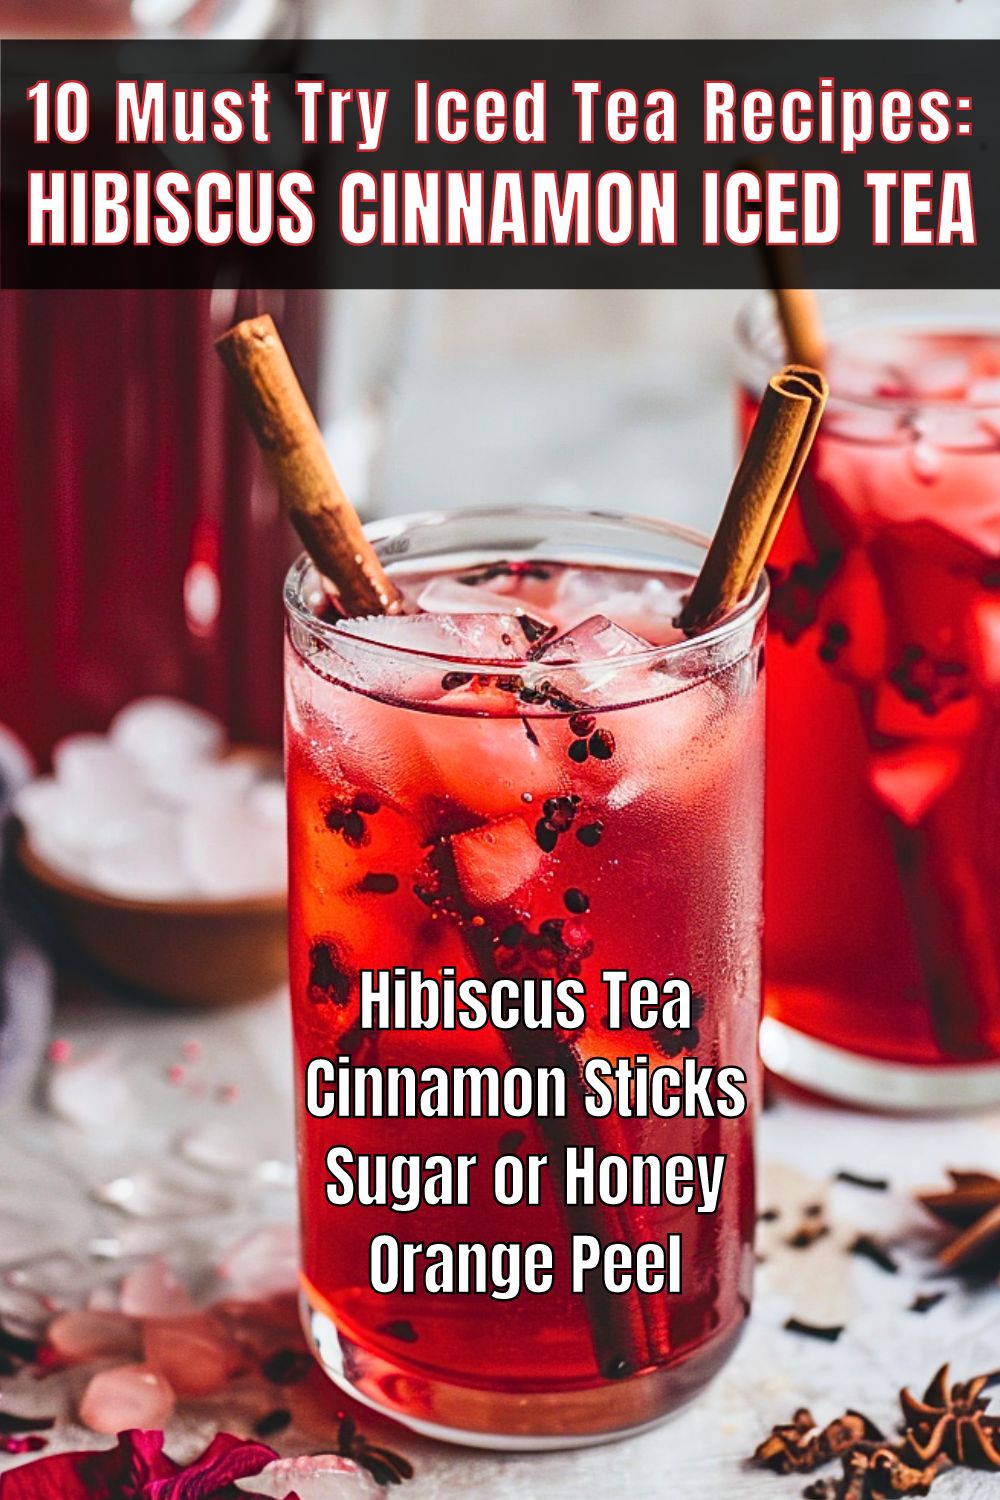 Iced Tea Recipes Hibiscus Cinnamon Iced Tea